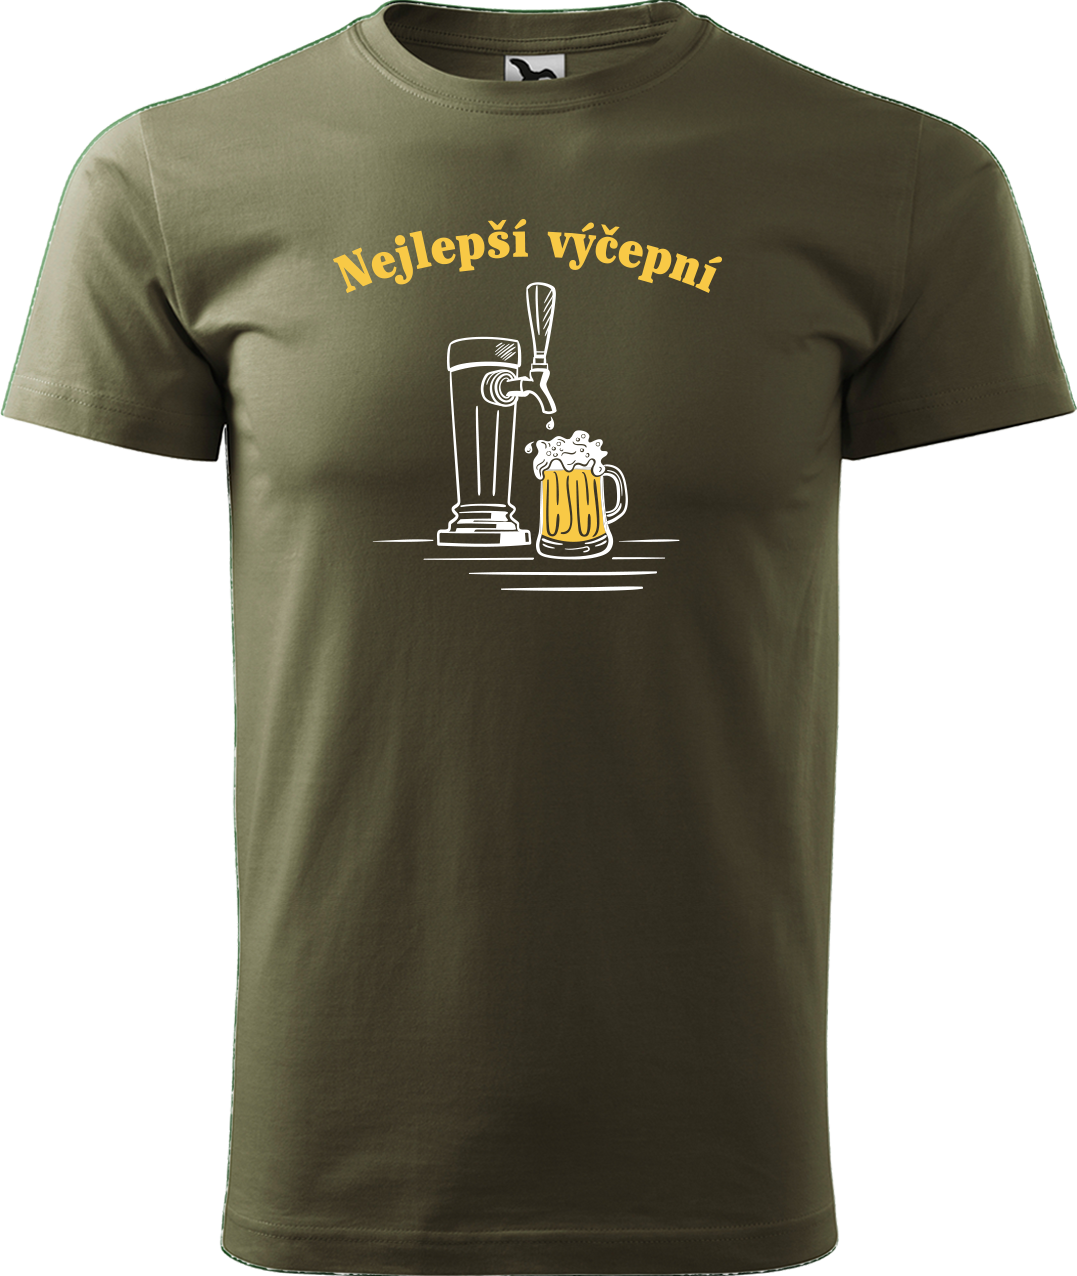 Pivní tričko - Nejlepší hospodskej Velikost: S, Barva: Military (69)